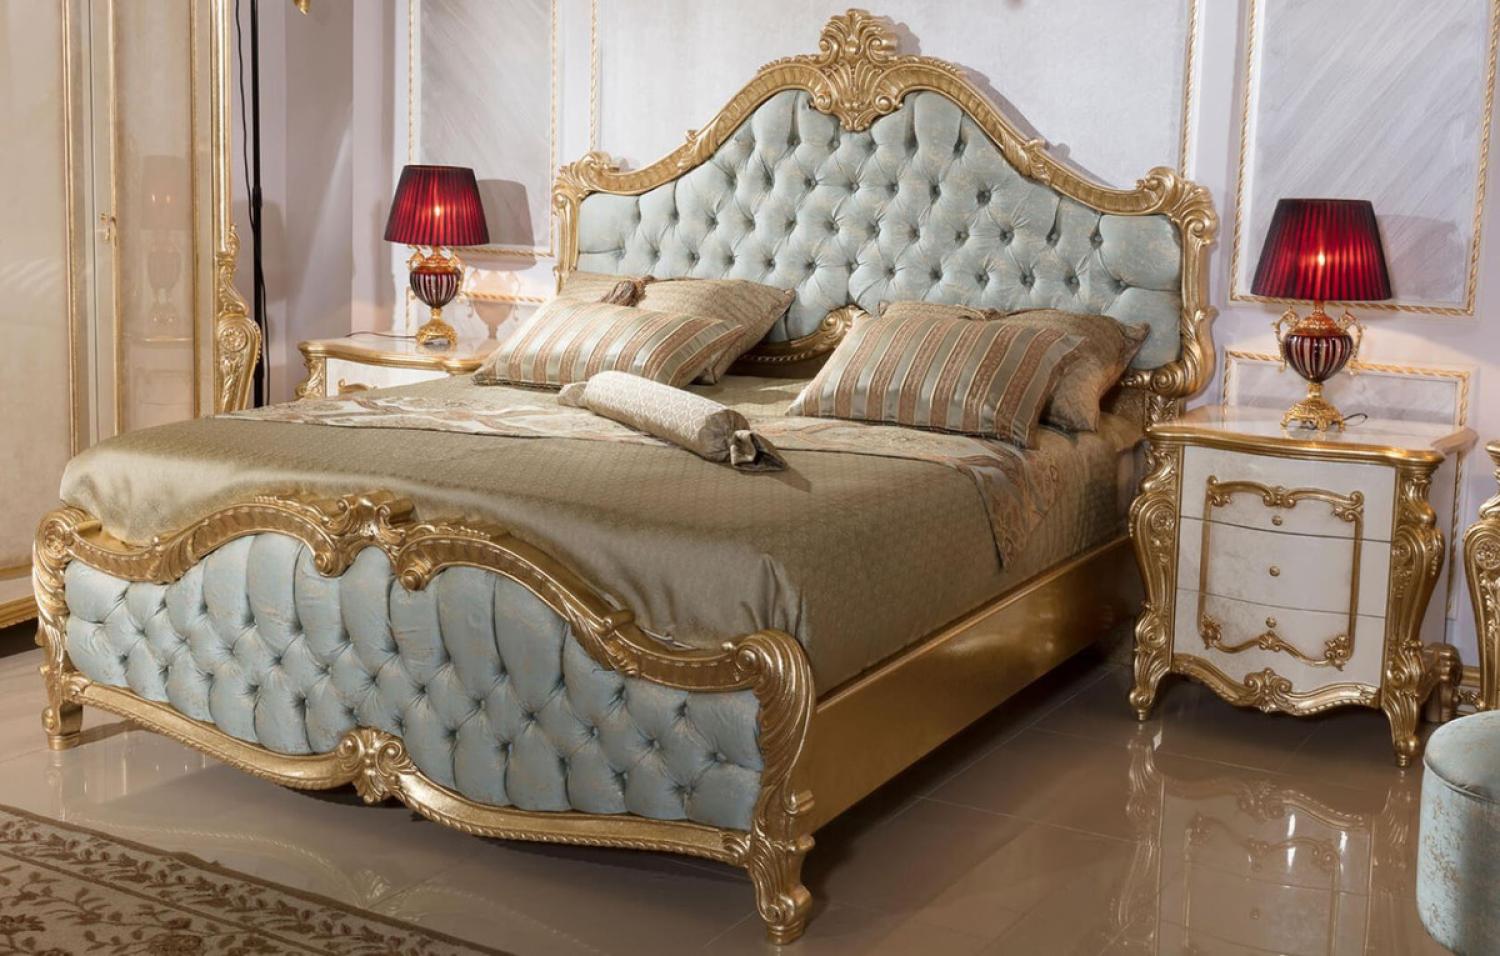 Casa Padrino Luxus Barock Schlafzimmer Set Hellblau / Weiß / Beige / Gold - 1 Doppelbett mit Kopfteil & 2 Nachtkommoden - Schlafzimmer Möbel im Barockstil - Edel & Prunkvoll Bild 1